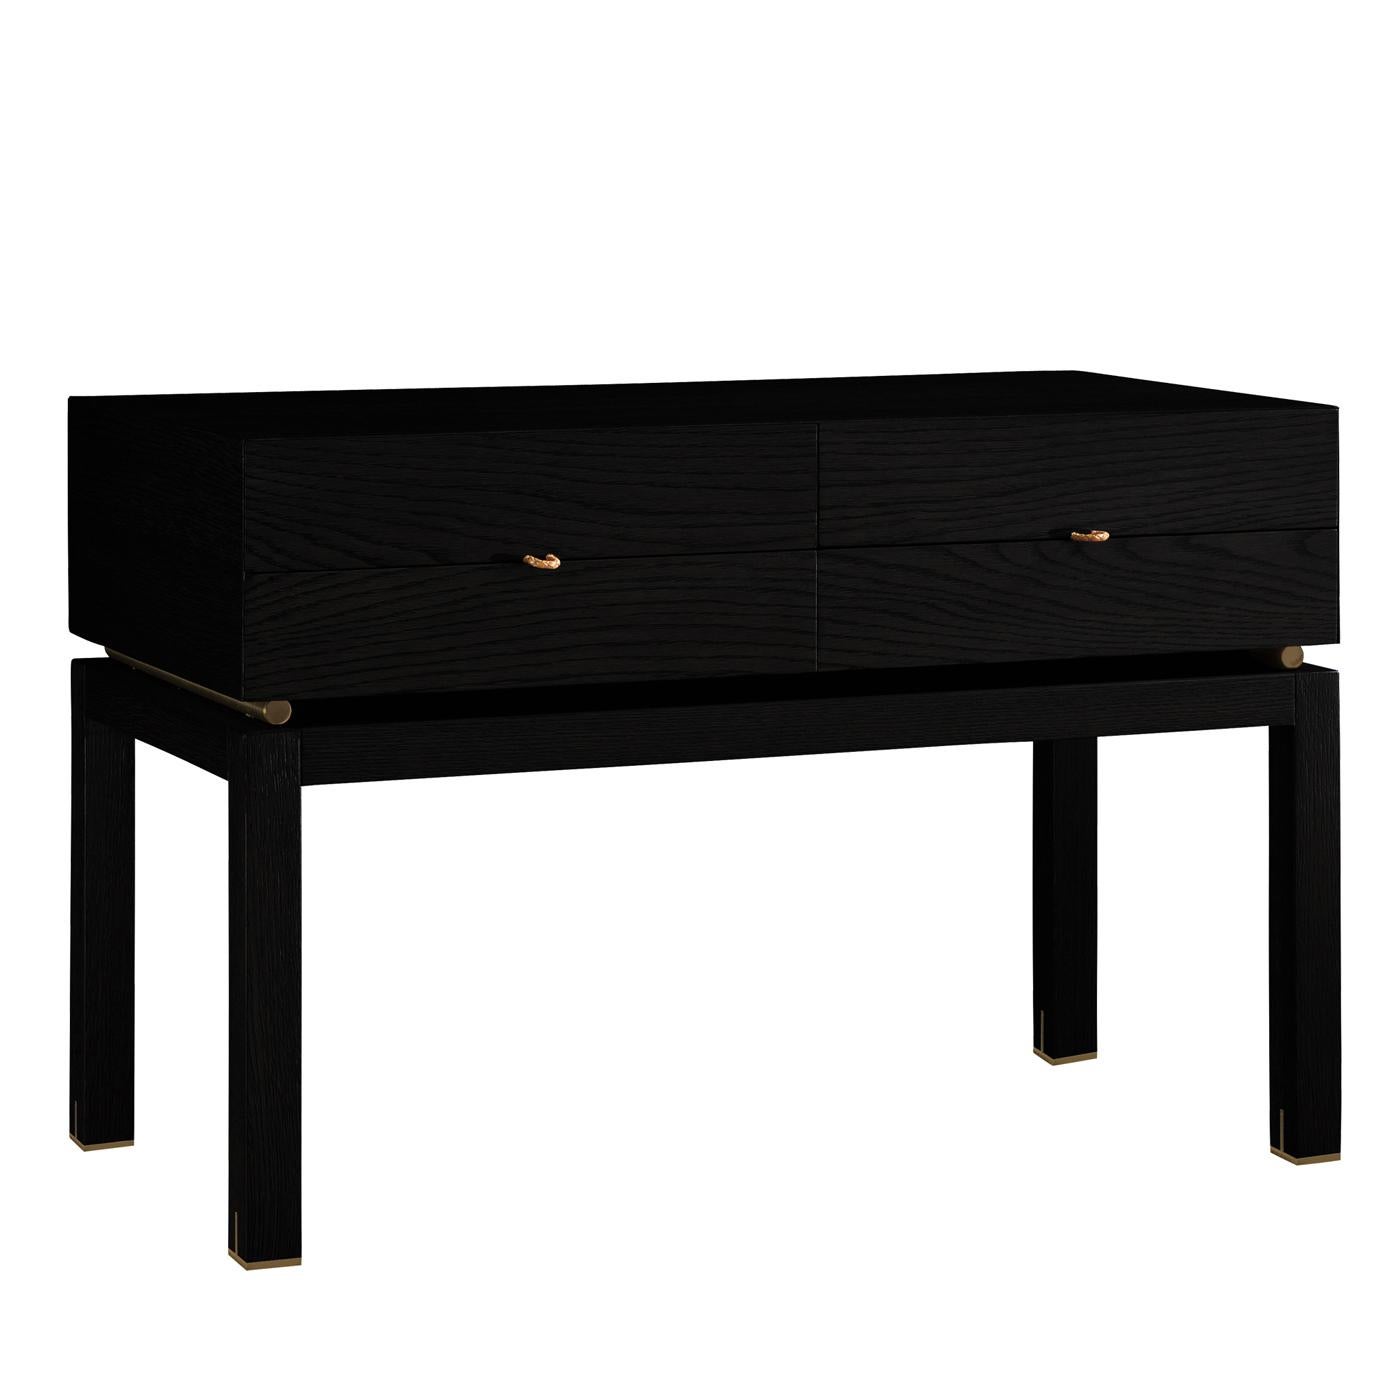 Dieser Nachttisch ist ein elegantes und funktionelles Dekorationsstück, das mit seinem komplett schwarzen Look einen Raum mit raffinierter Raffinesse ausstattet. Die aus lackiertem, massivem Hartholz gefertigte Silhouette ruht auf robusten und